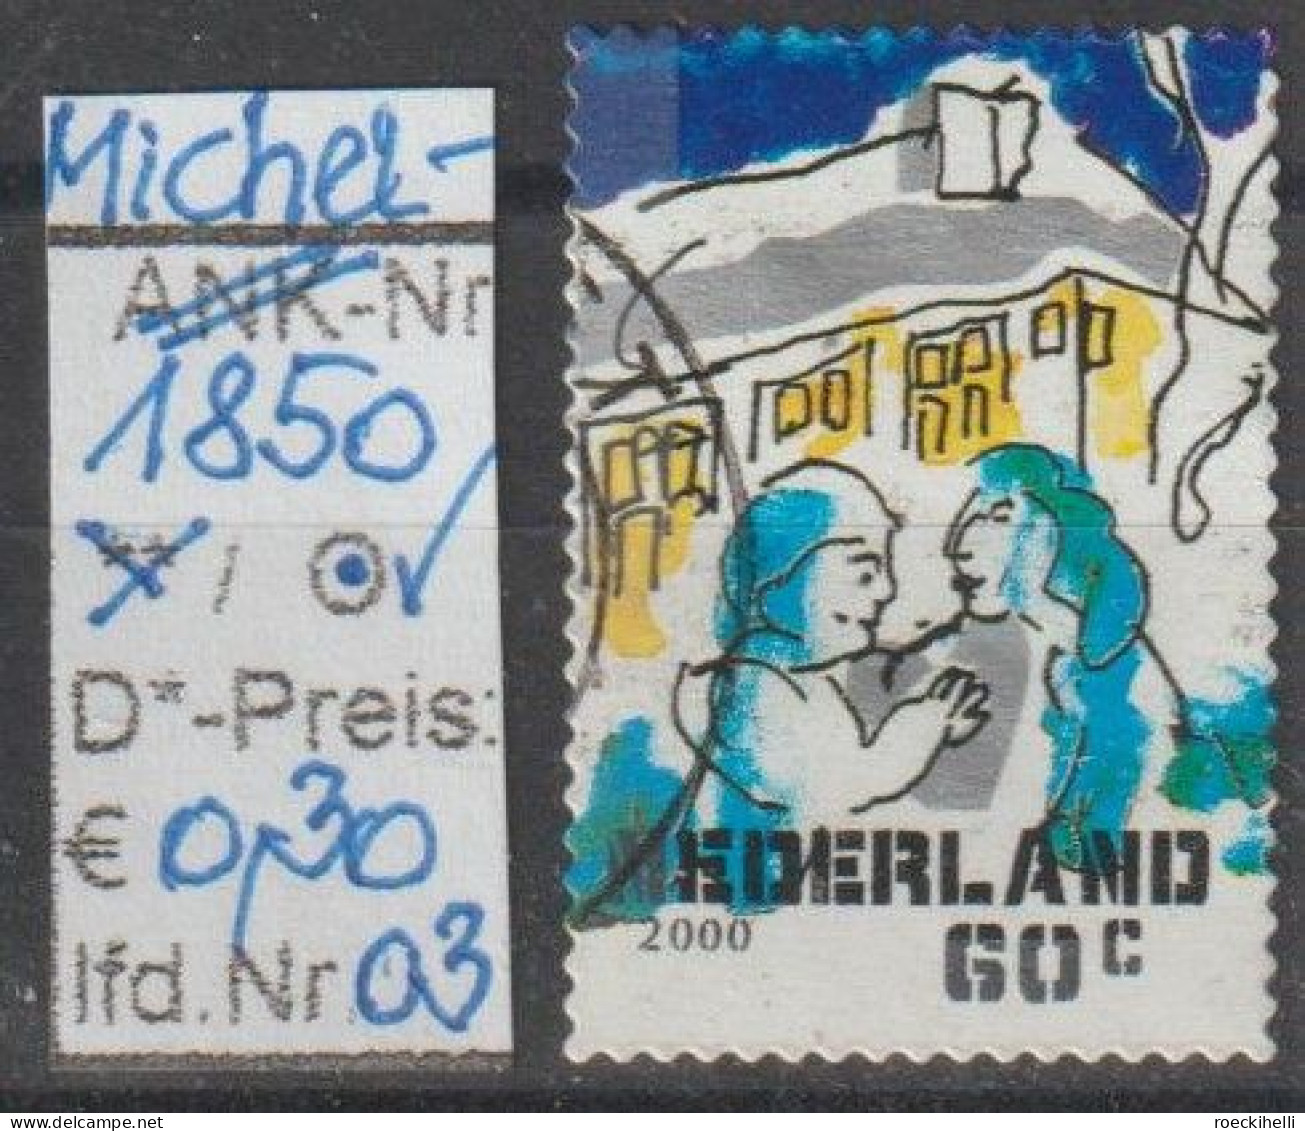 2000 - NIEDERLANDE - FM/DM "Dez.marken-Paar Vor Haus" 60 C Mehrf. - S. Scan  (1850o 01-03 Nl) - Gebraucht